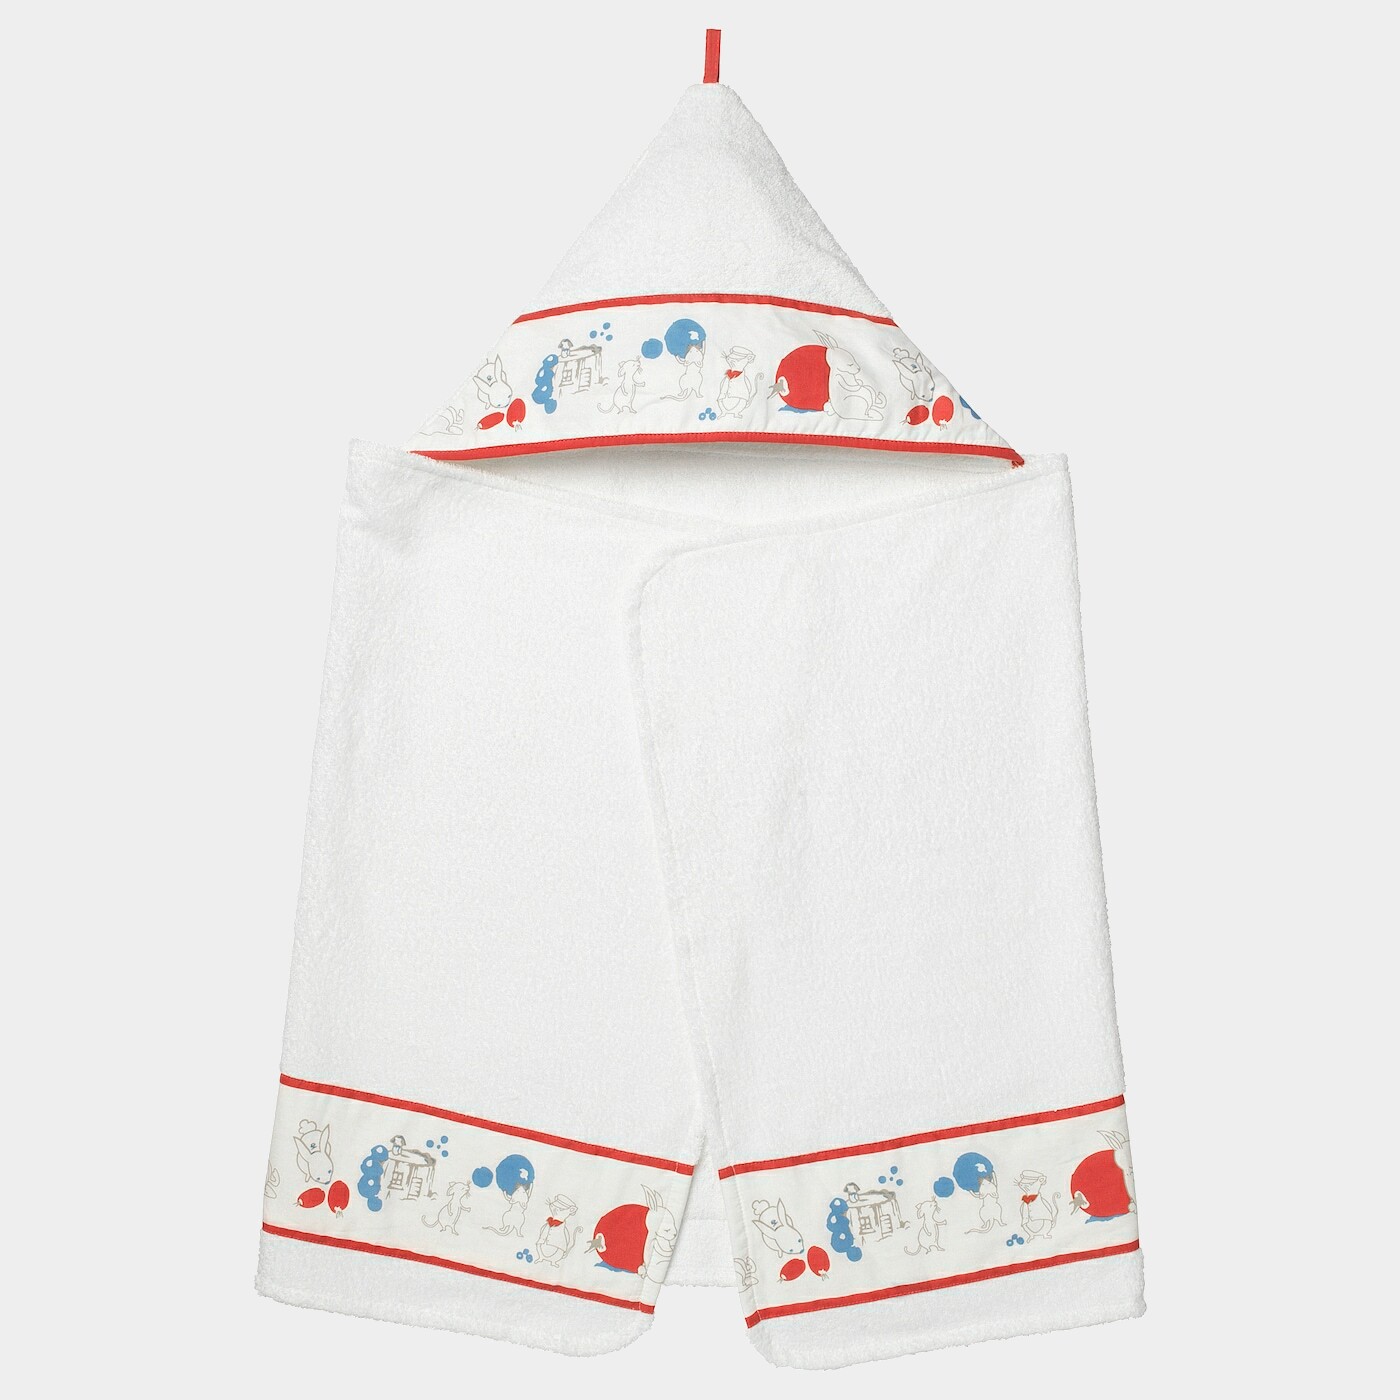 RÖDHAKE Babybadetuch mit Kapuze  - Badecapes & Waschlappen - Textilien Ideen für dein Zuhause von Home Trends. Textilien Trends von Social Media Influencer für dein Skandi Zuhause.